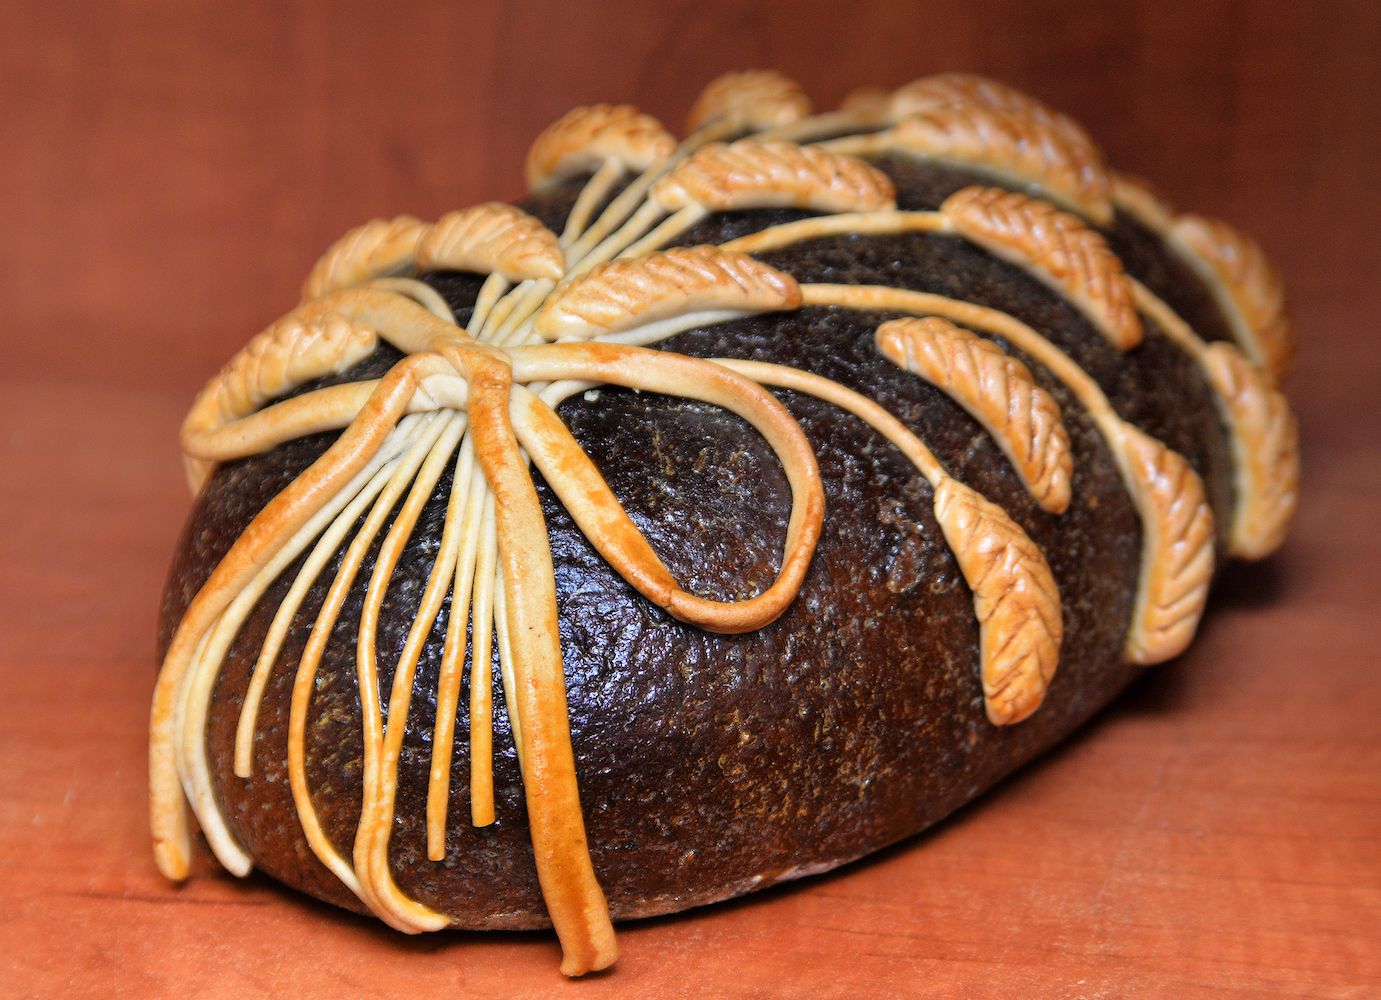 Joniškio duona - šeimos duonkepių tradicijos. Joniškis